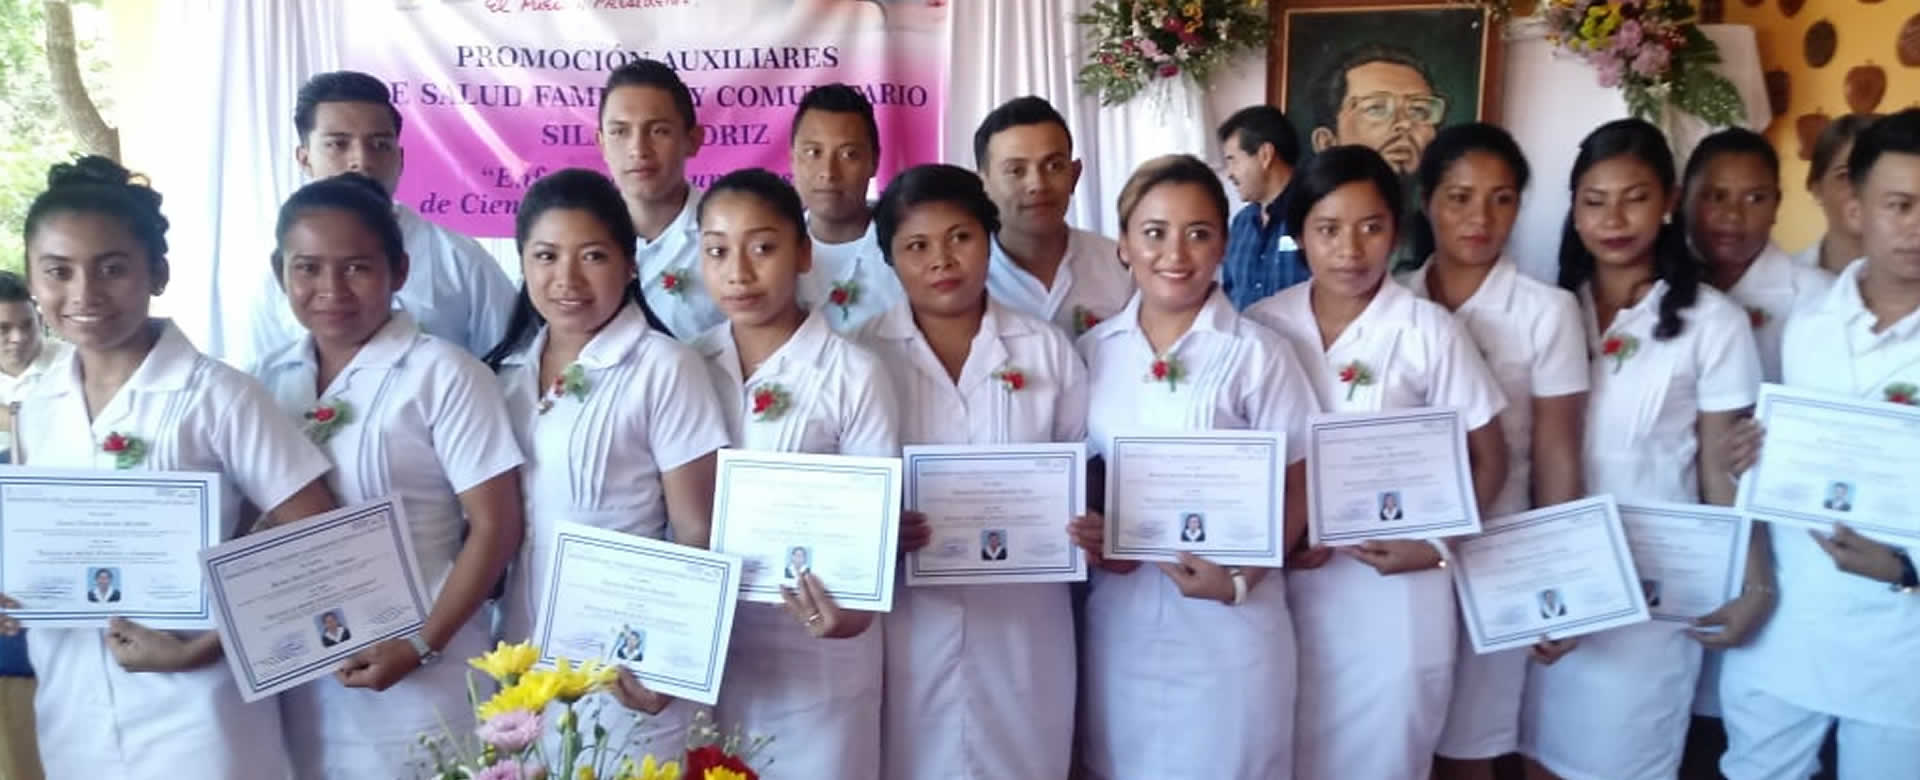 El Ministerio de Salud (MINSA) realizó la cuarta promoción de enfermeros auxiliares y comunitarios en el departamento de Madriz.